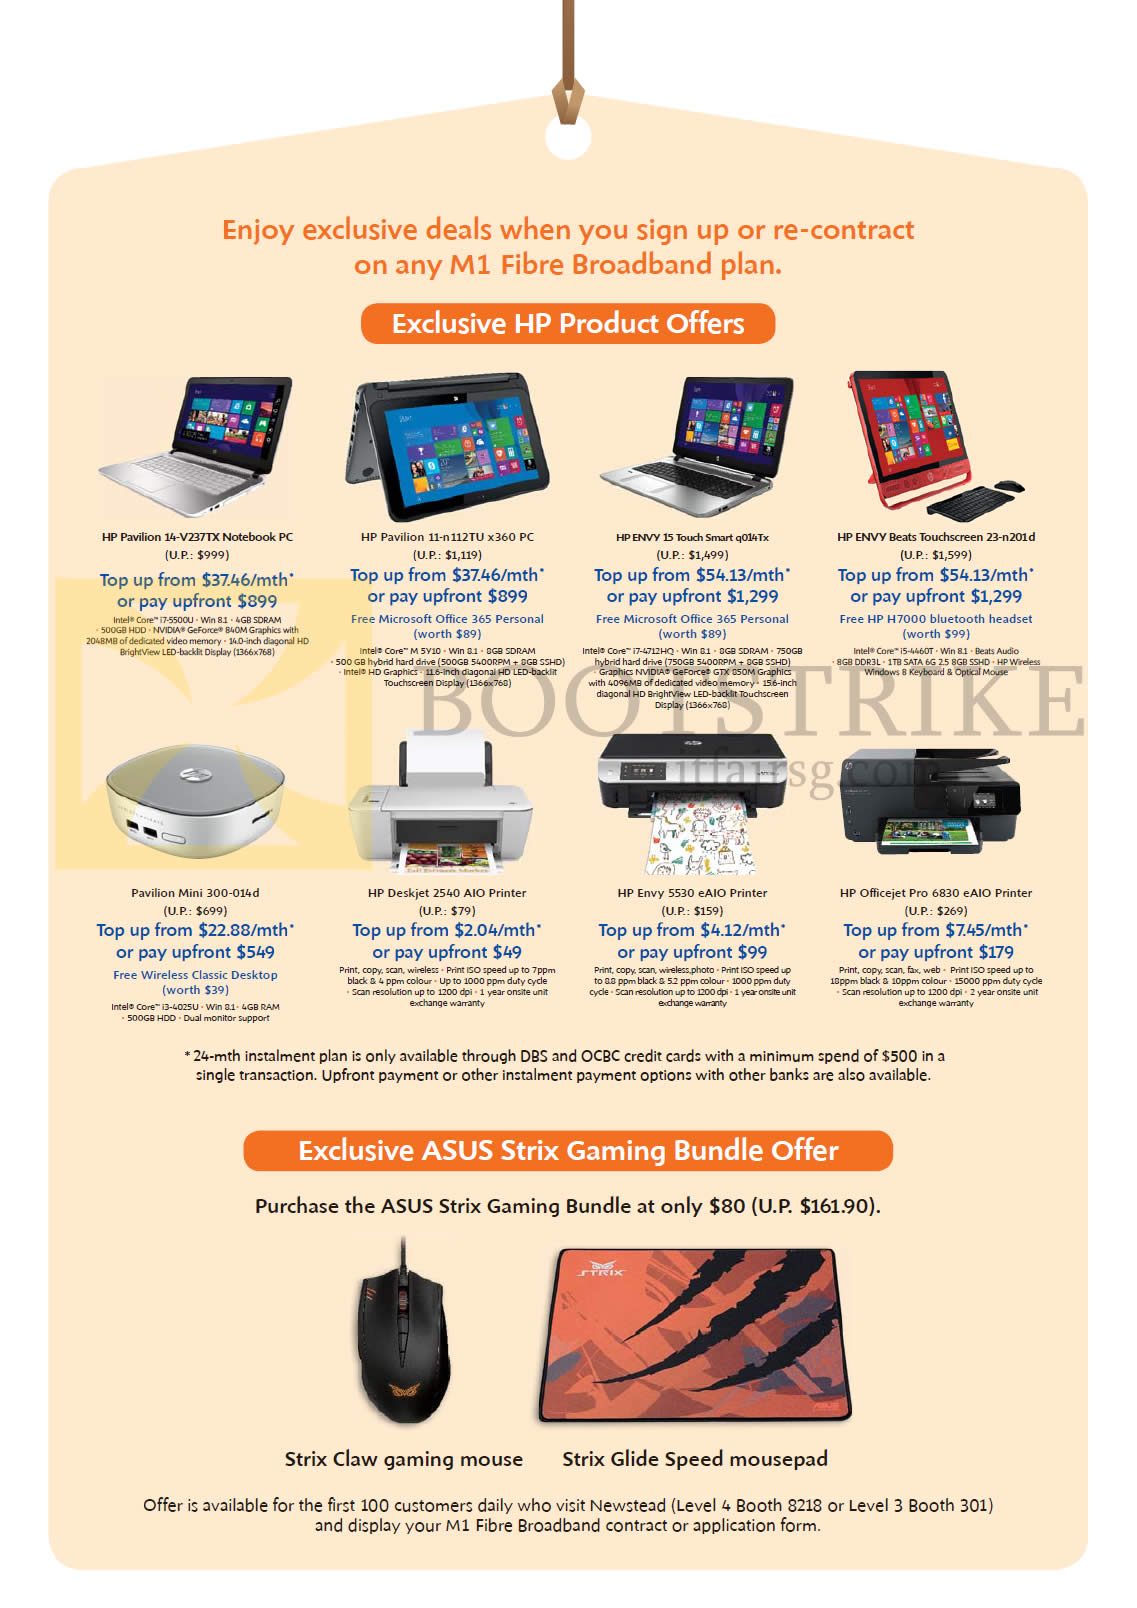 IT SHOW 2015 price list image brochure of M1 Fibre Broadband HP Notebooks, Printers, Pavilion 11, 14, Envy 15, Beats, Pavilion Mini, Envy 5530, Officejet Pro 6830, Deskjet 2540, ASUS Strix Claw Mouse